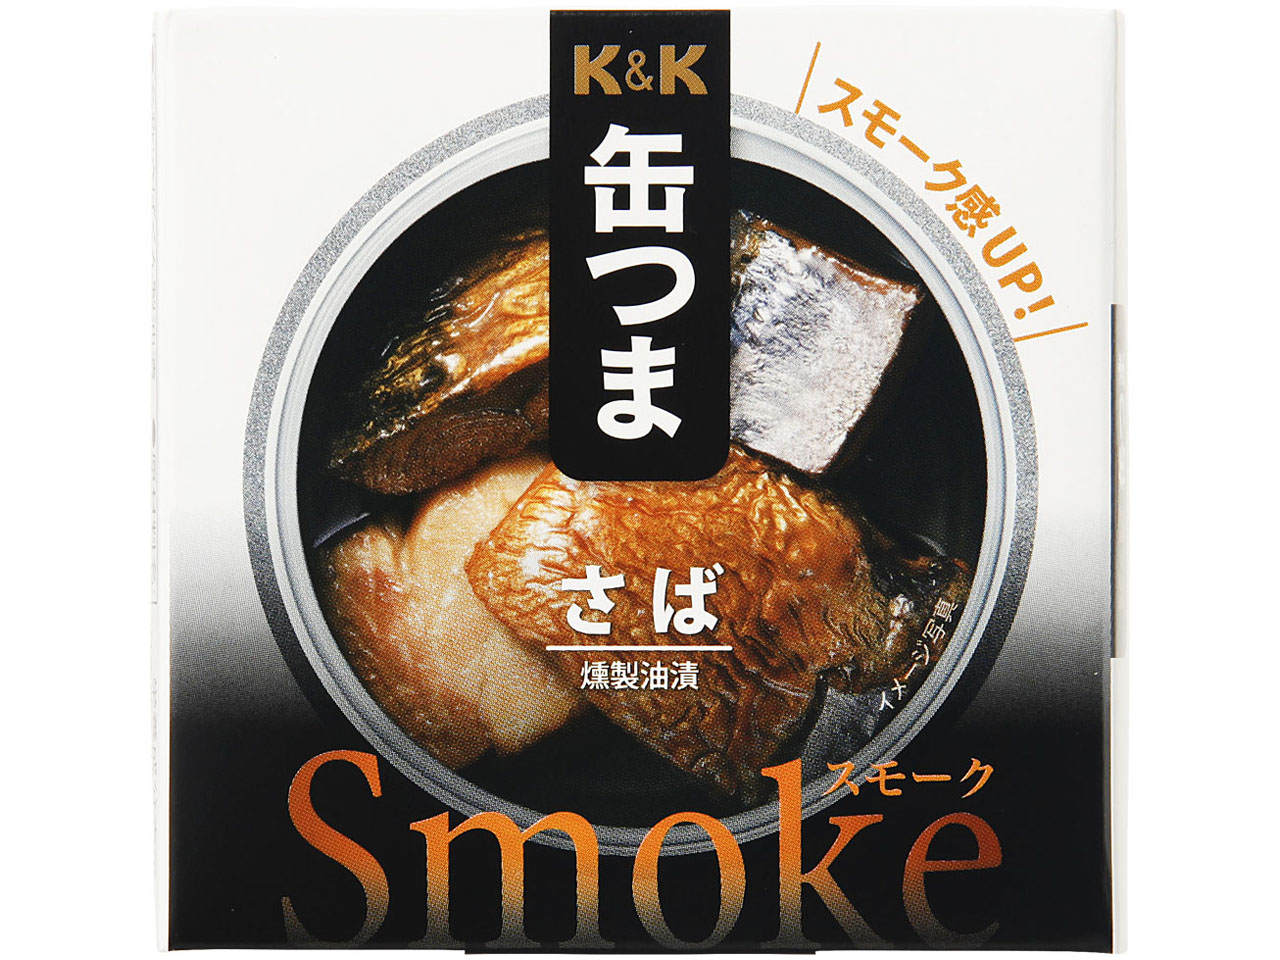 K&K 缶つまSmoke さば 50g x6